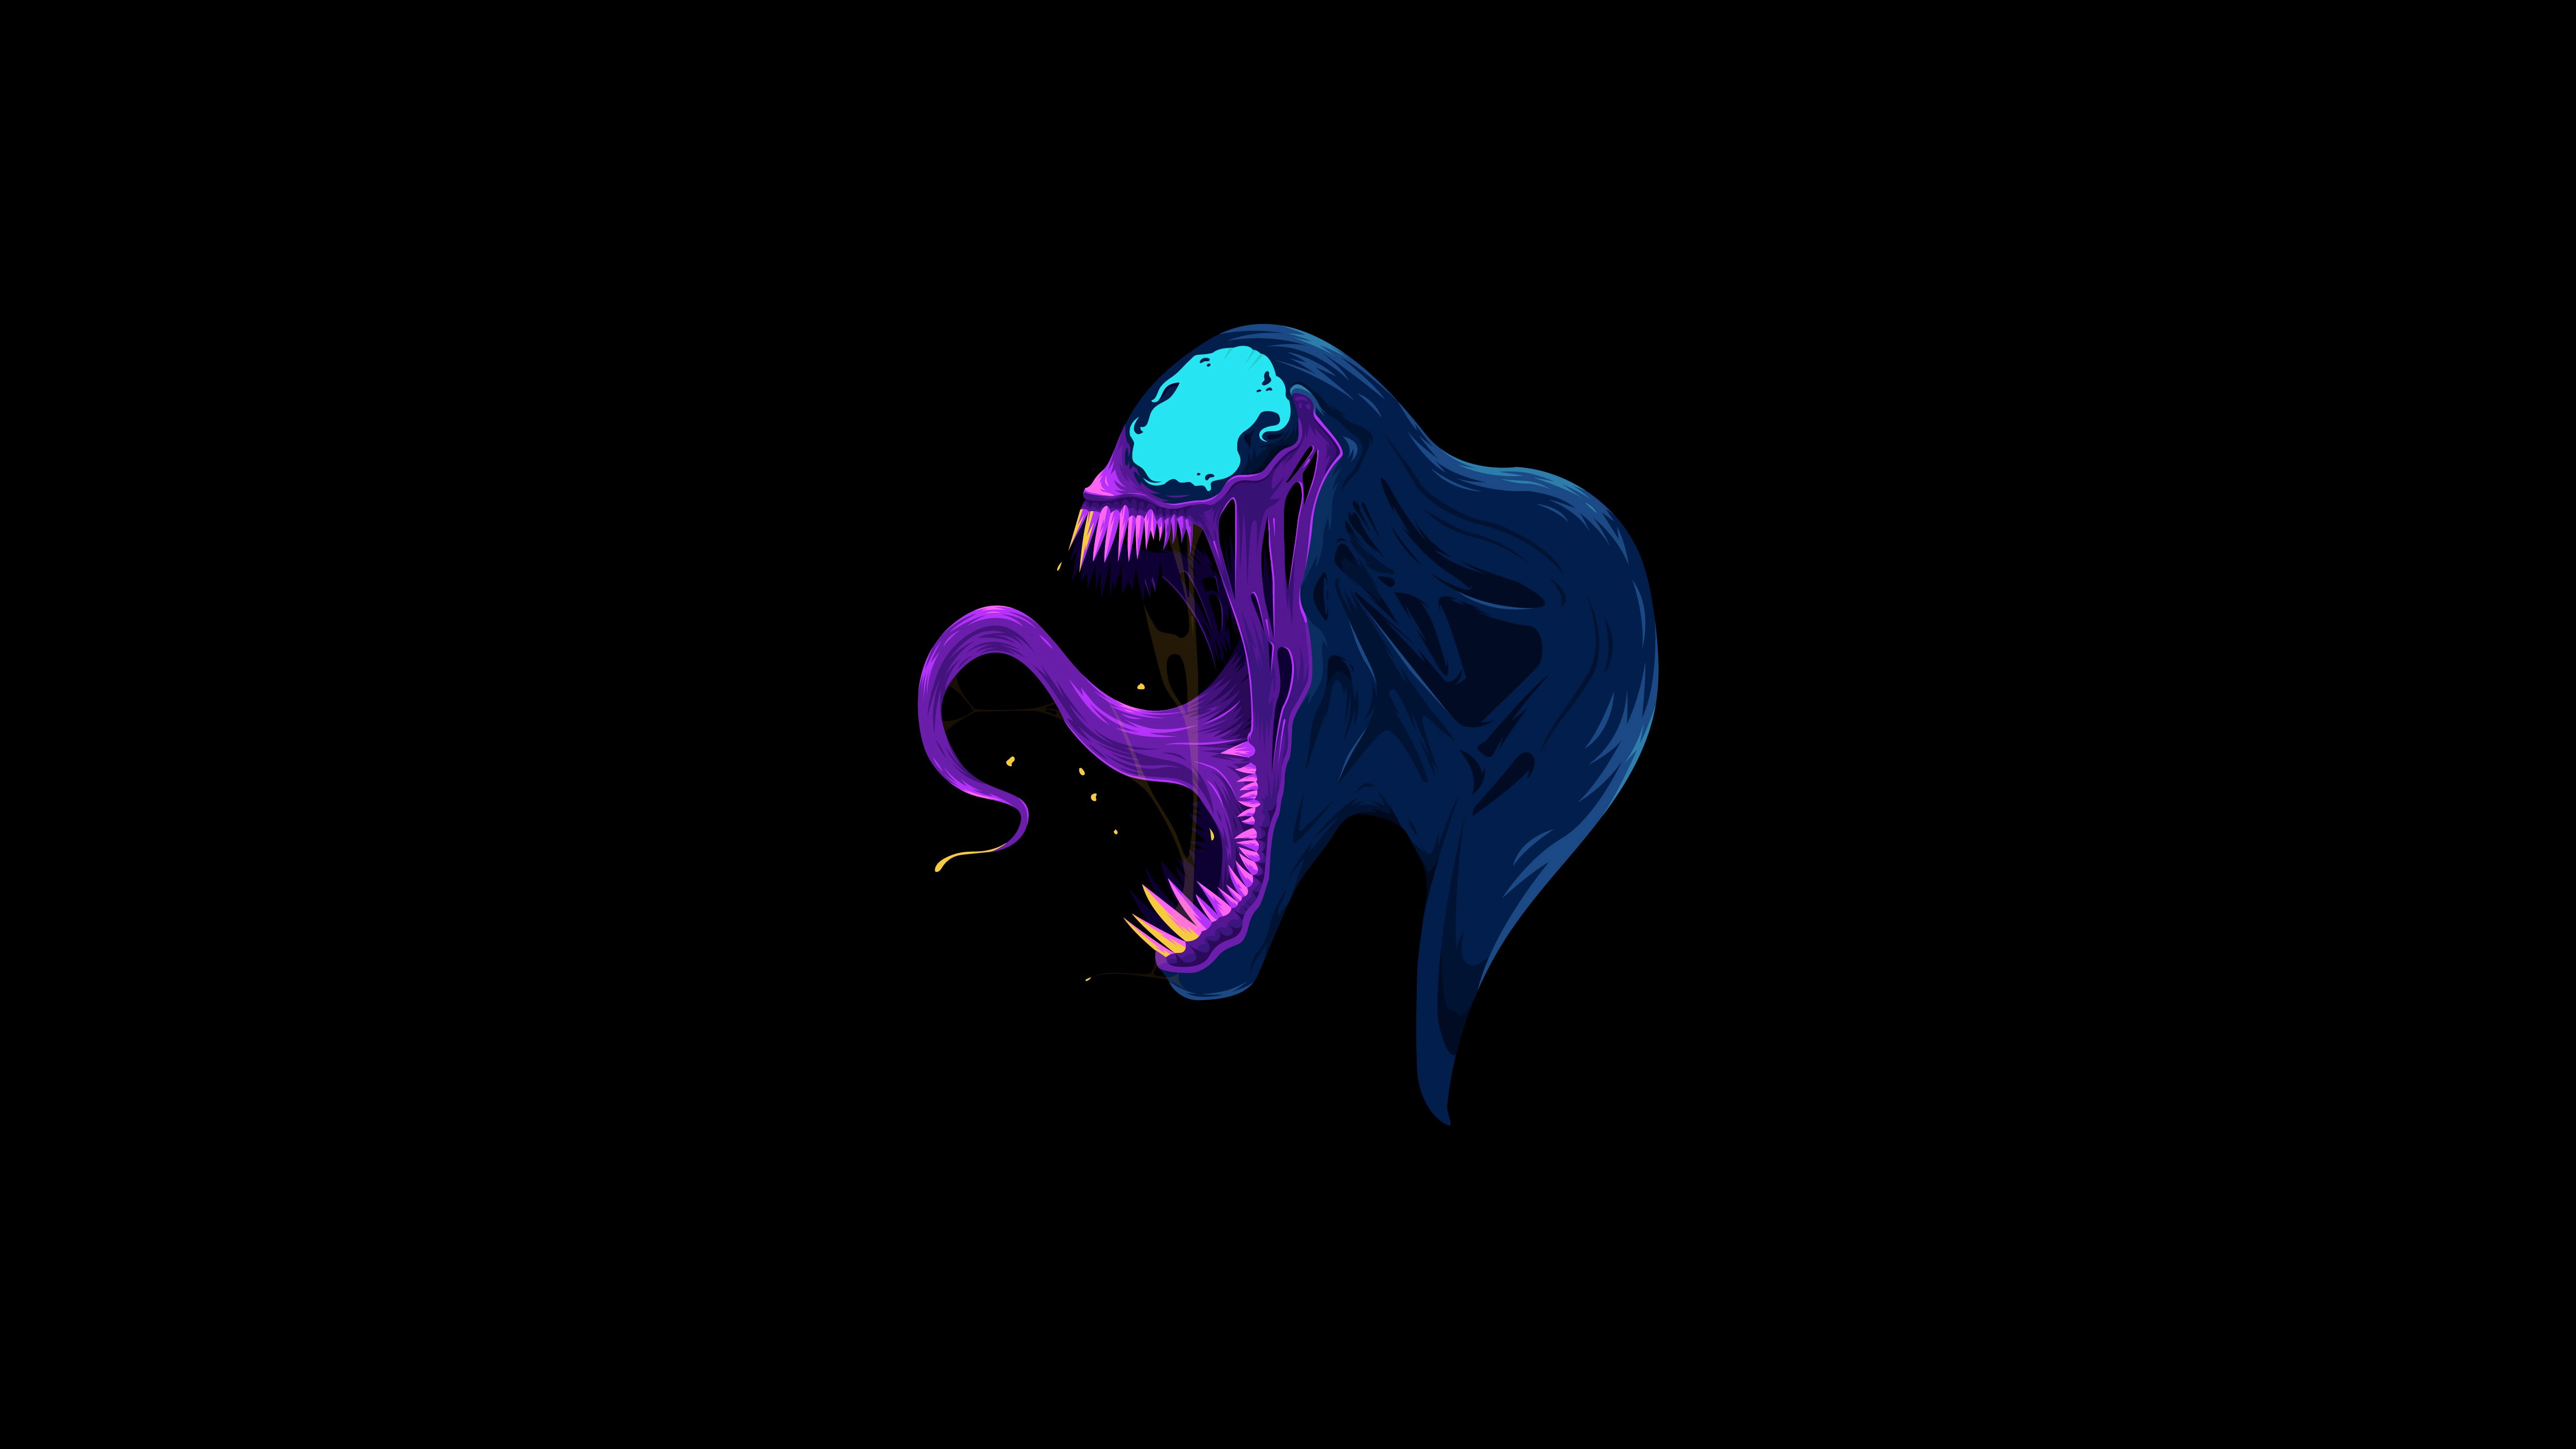 Fondos de pantalla Venom Ilustración arte minimalista